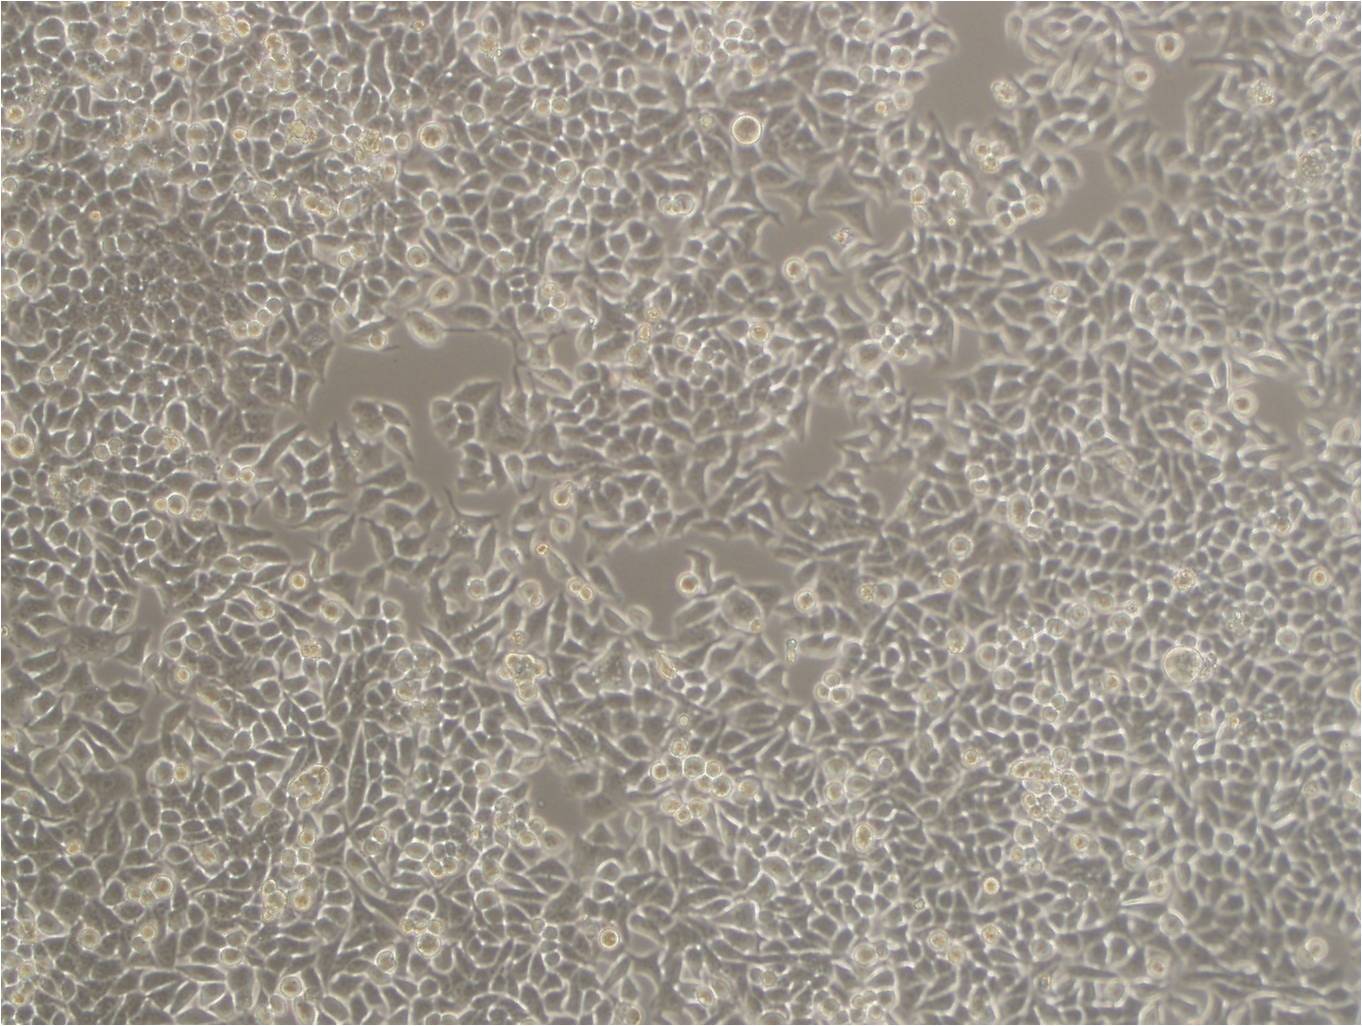 HCC2218 Fresh Cells|人乳腺导管癌细胞(送STR基因图谱),HCC2218 Fresh Cells